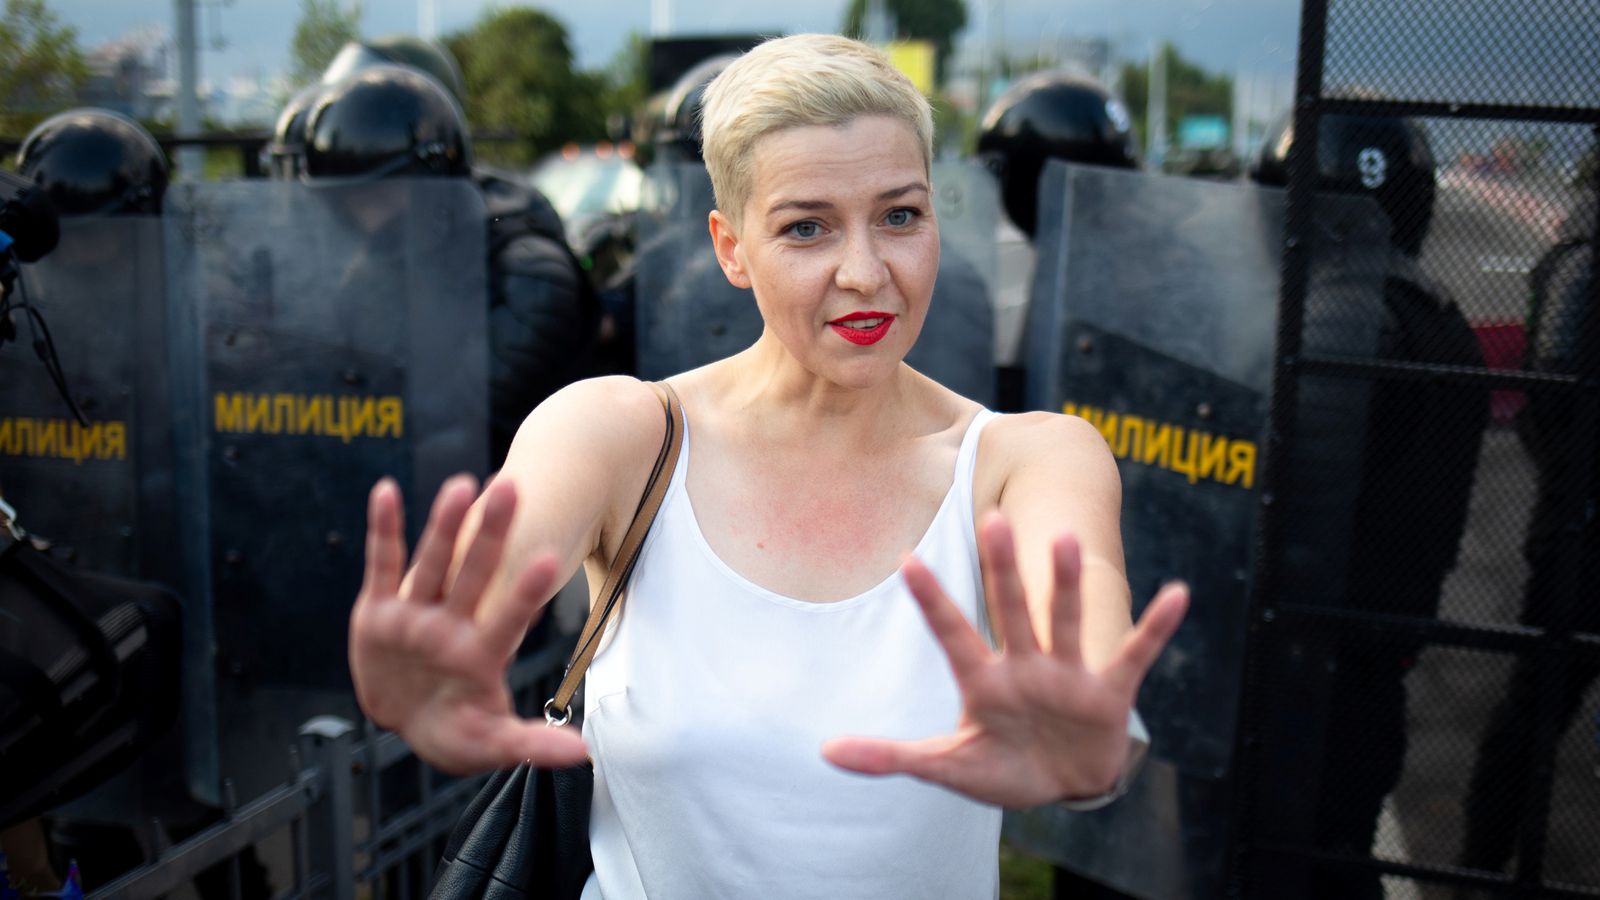 maria-kolesnikova-prominent-belarus-opposition-leader-detained-on-ukraine-border-world-news-sky-news